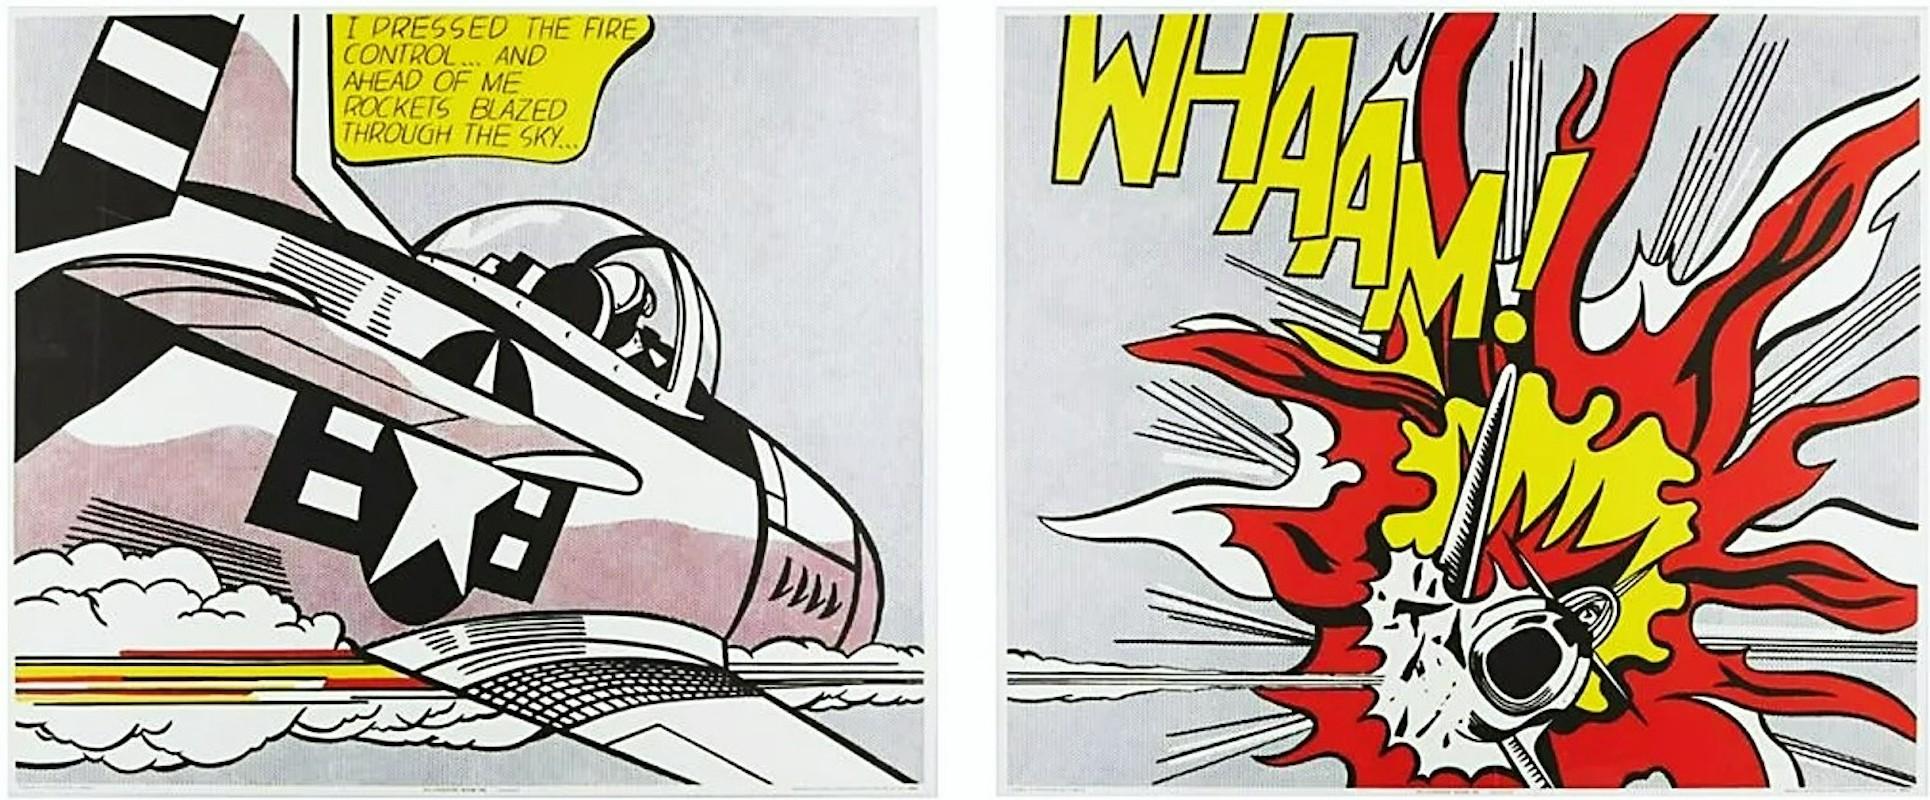 Whaam! - Print by Roy Lichtenstein